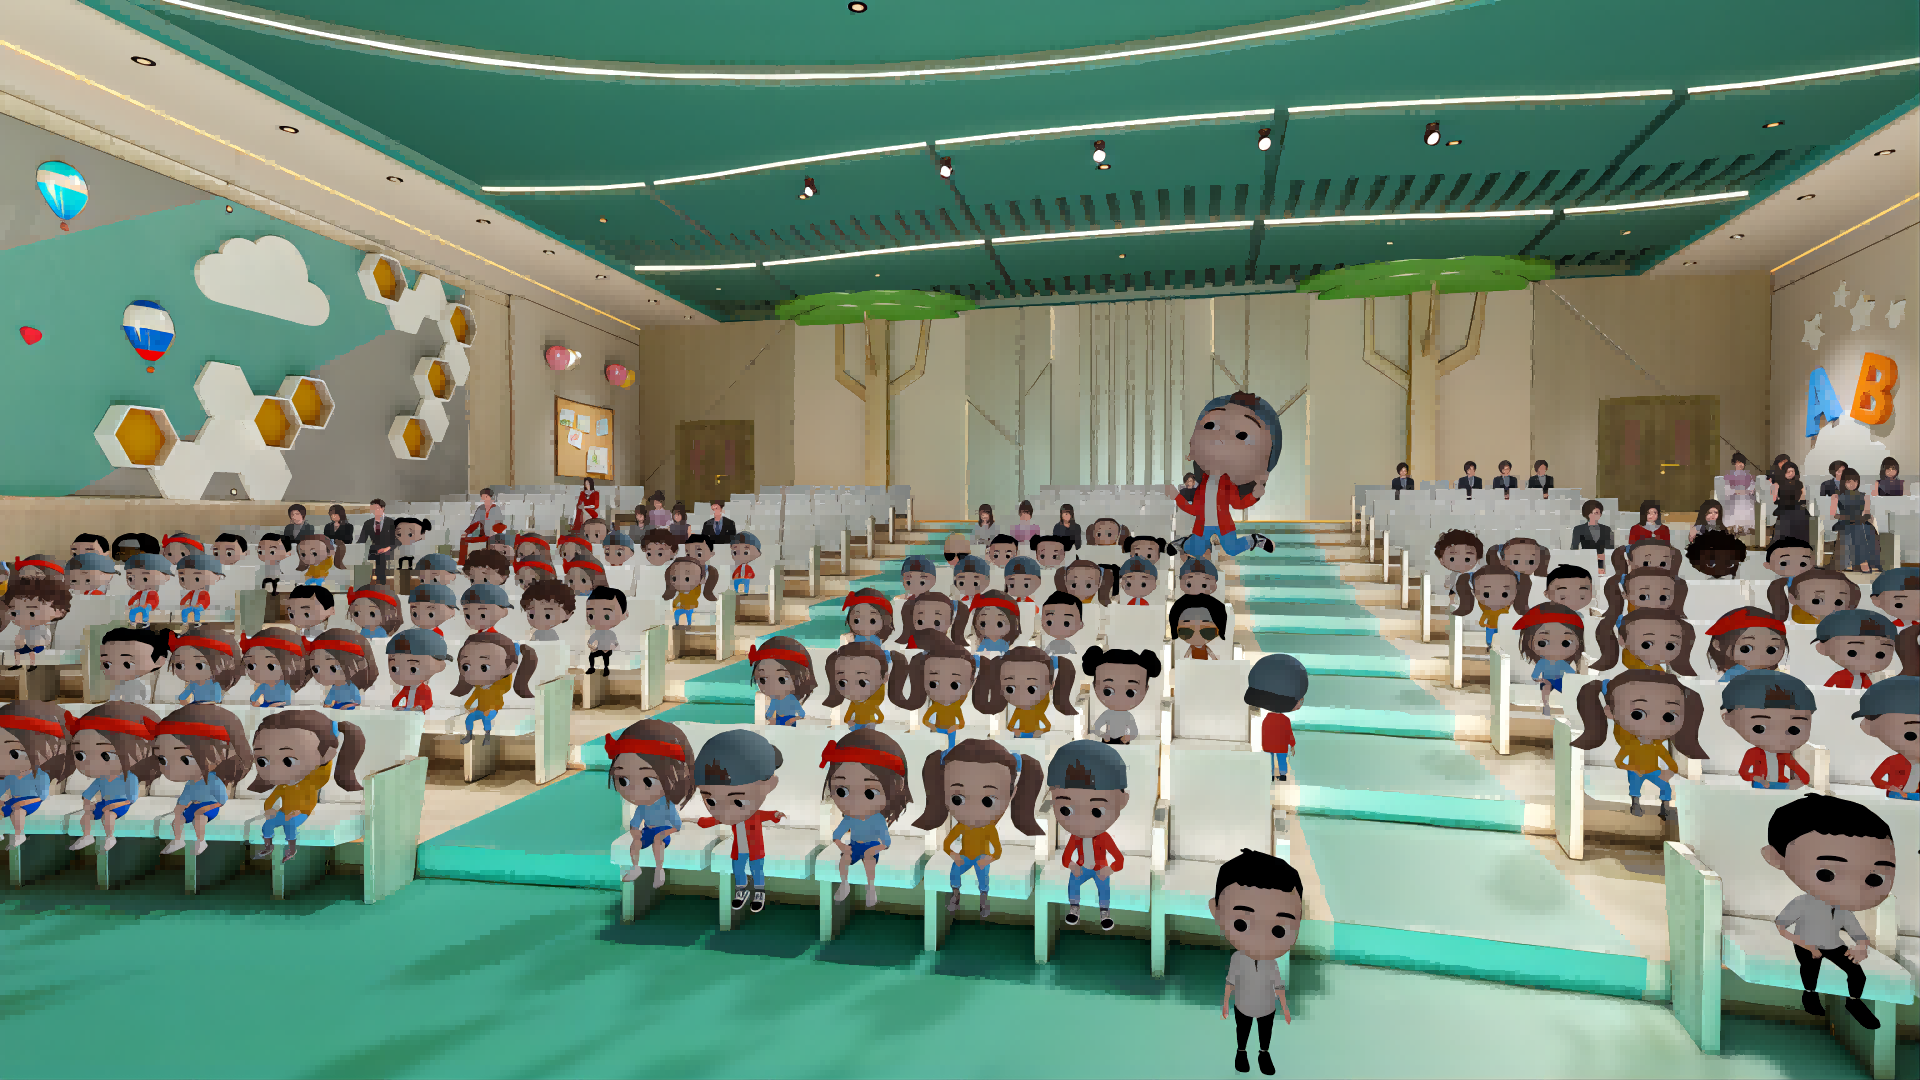 这是一张卡通风格的图片，展示了许多穿着校服的卡通人物坐在教室里，看向前方的讲台和站立的老师。